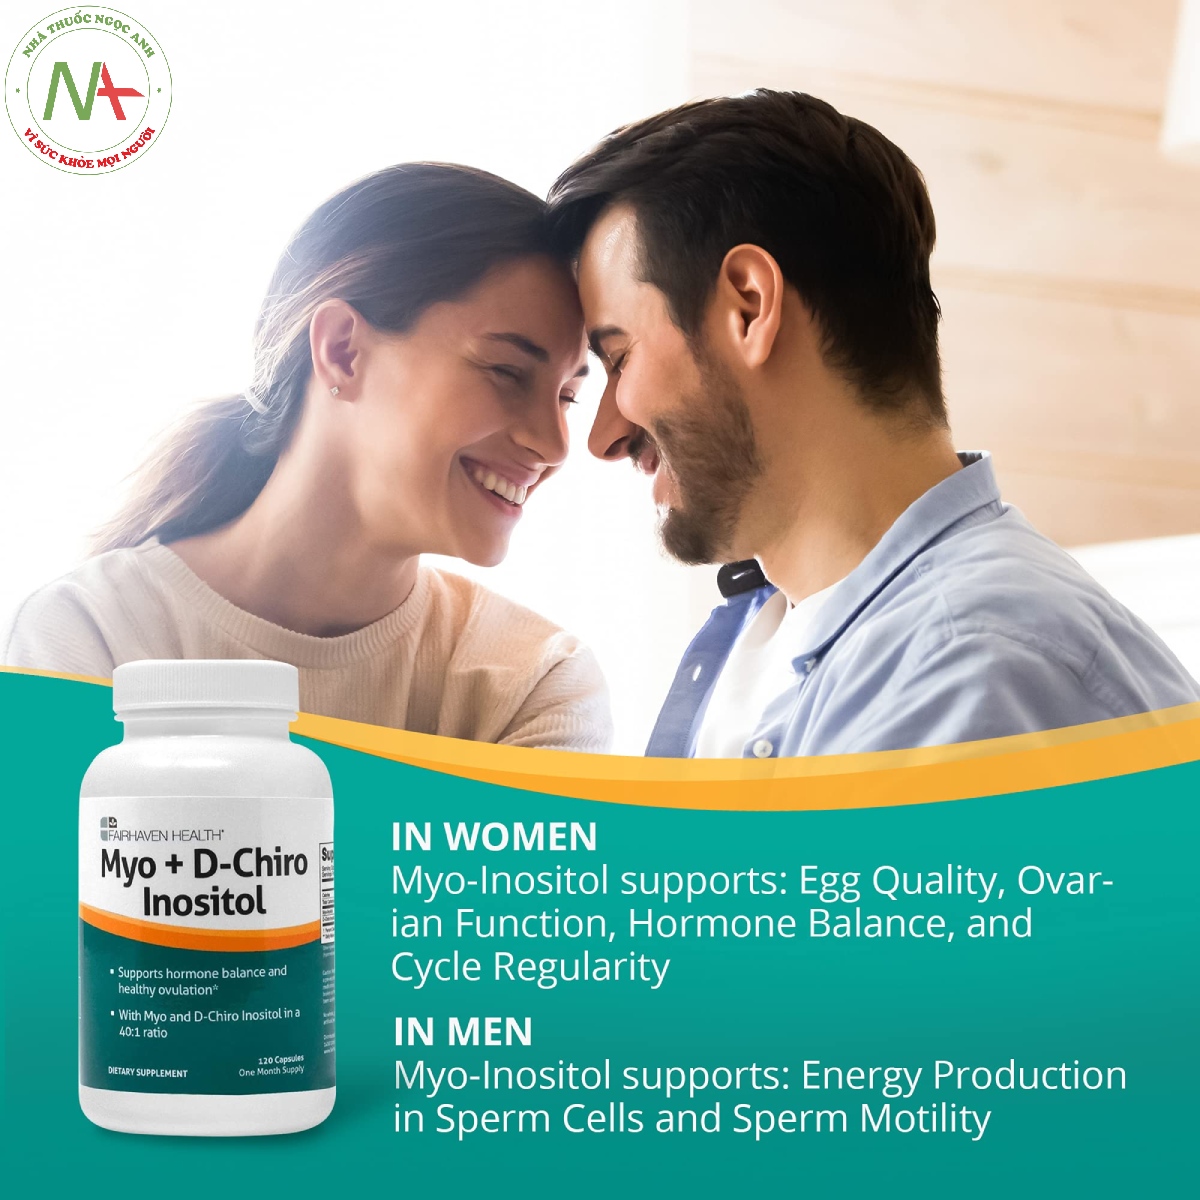 Myo-Inositol For Women and Men